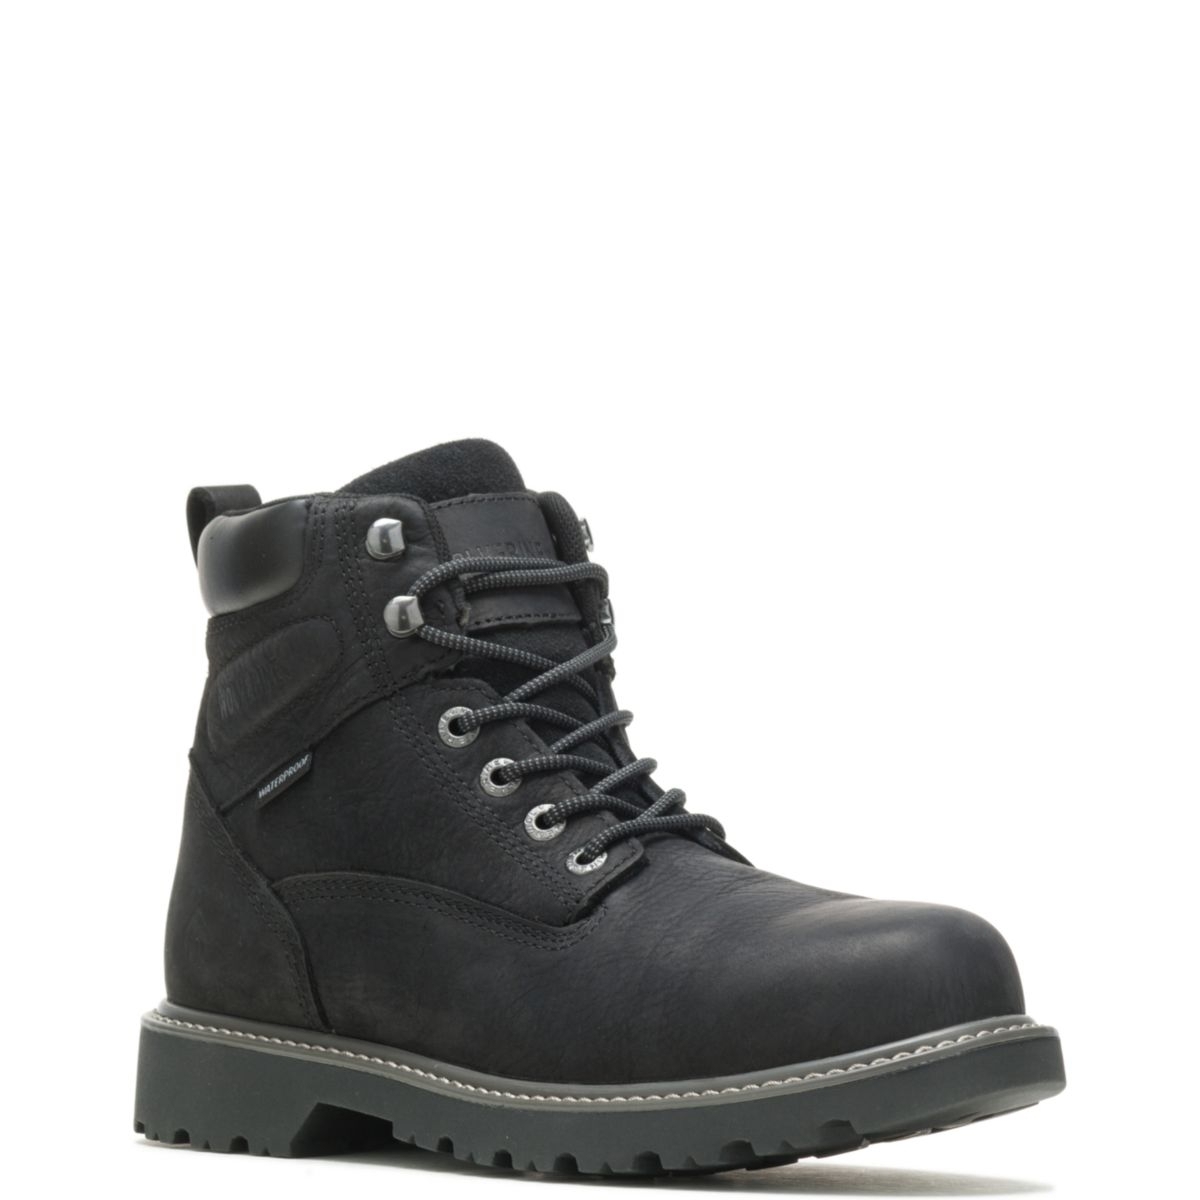 WOLVERINE Men's Floorhand 6 Waterproof Steel Toe Work Boot Black - W10694 BLACK - BLACK, 8 Wide